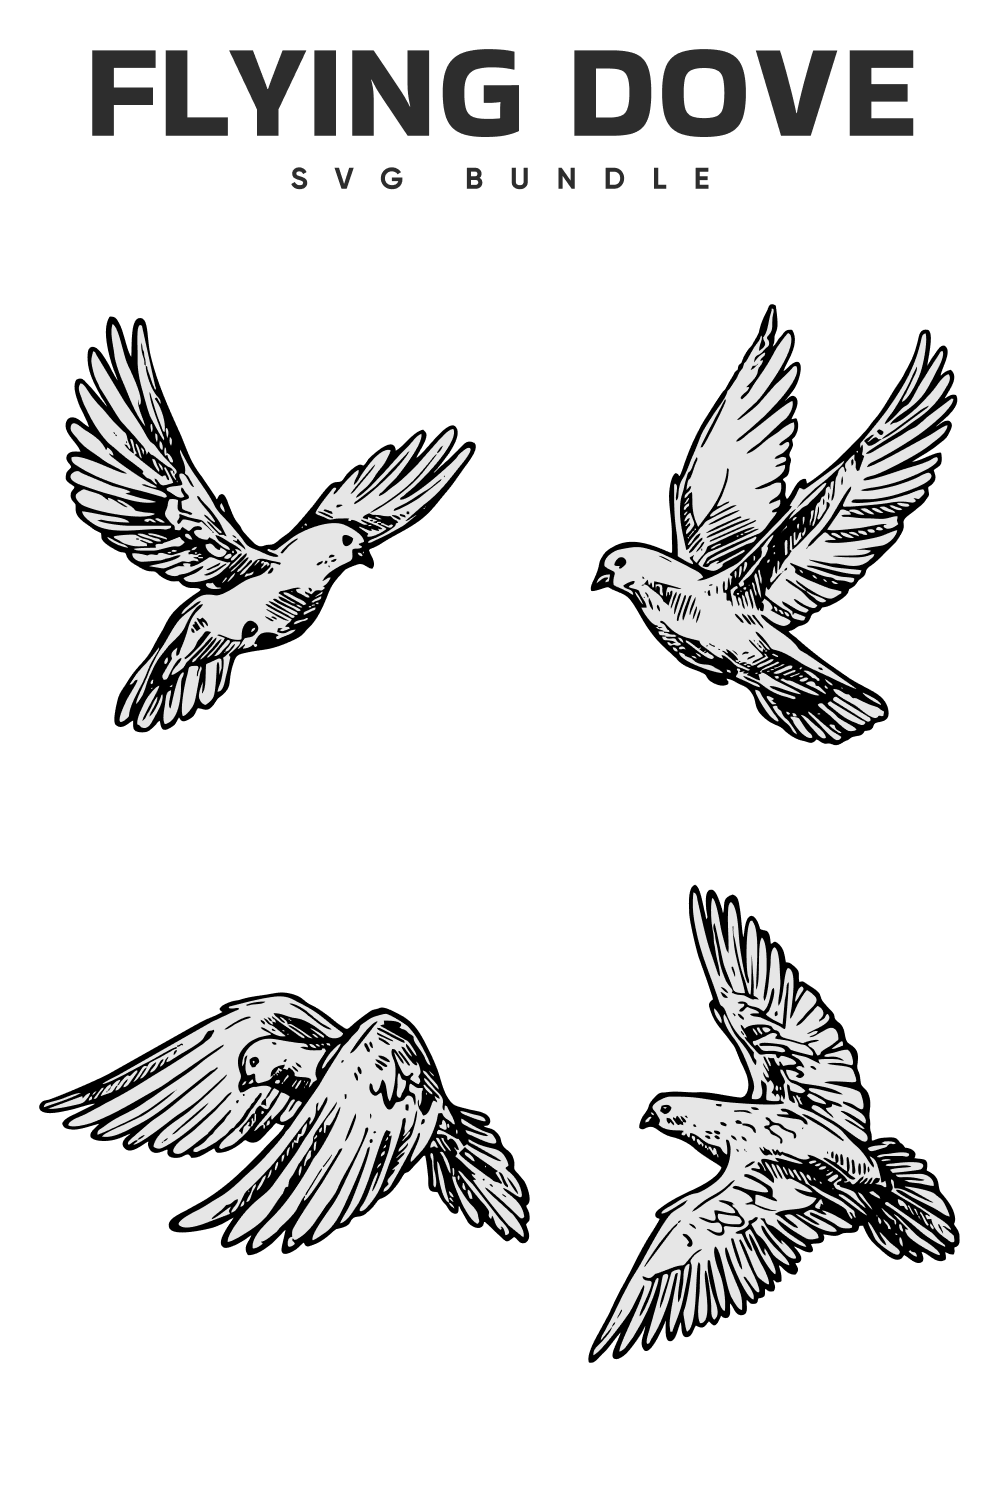 The flying dove svg bundle.